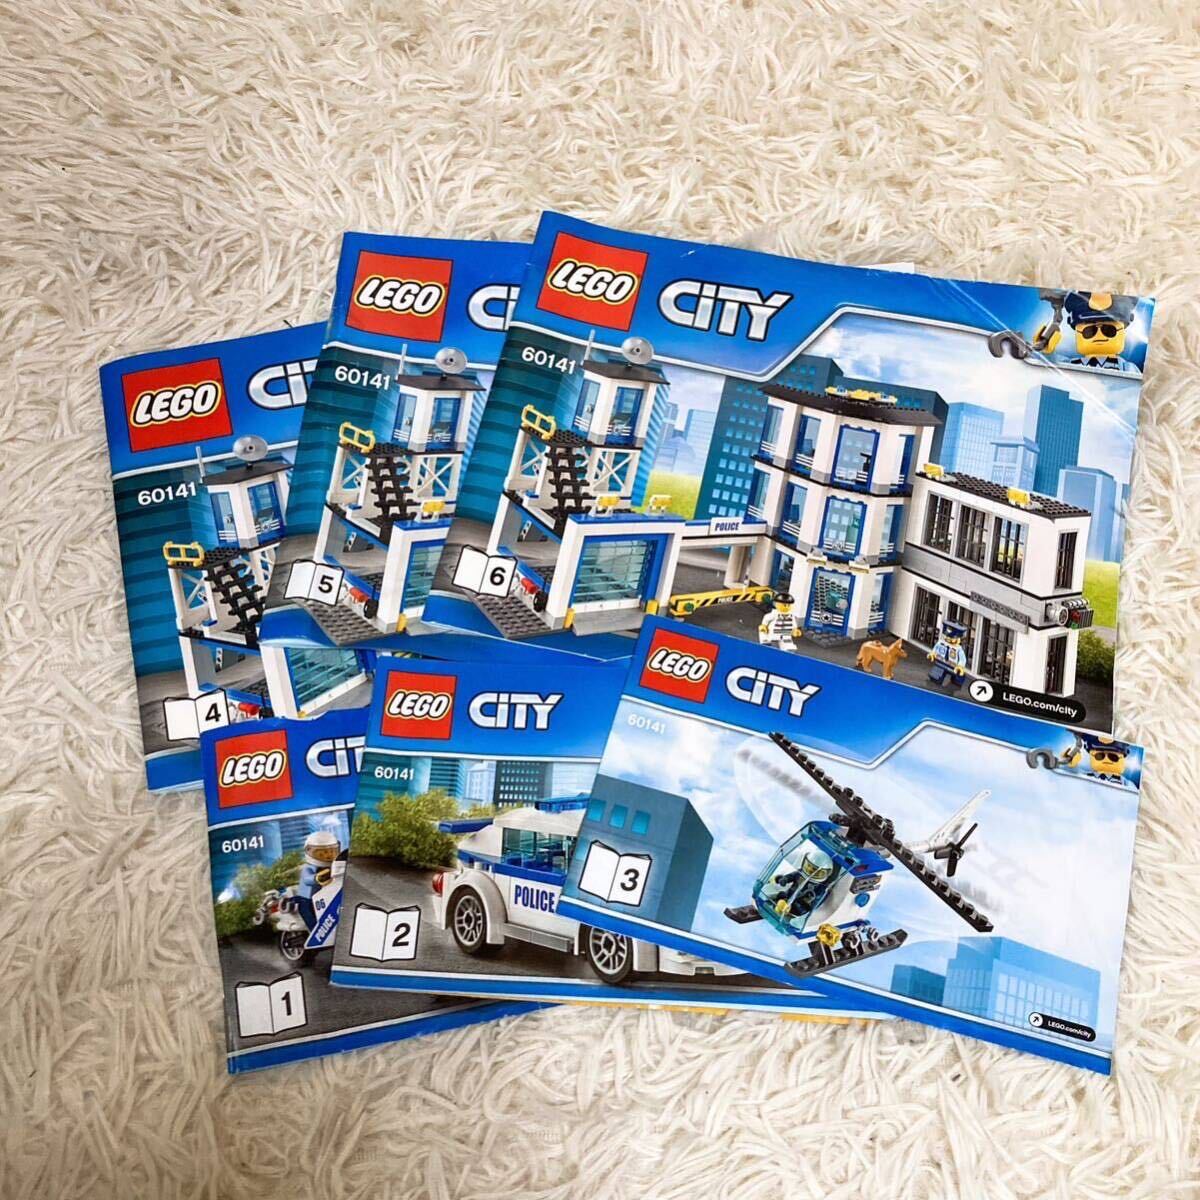 LEGO Lego Lego блок Lego City 60141 игрушка детали продажа комплектом 